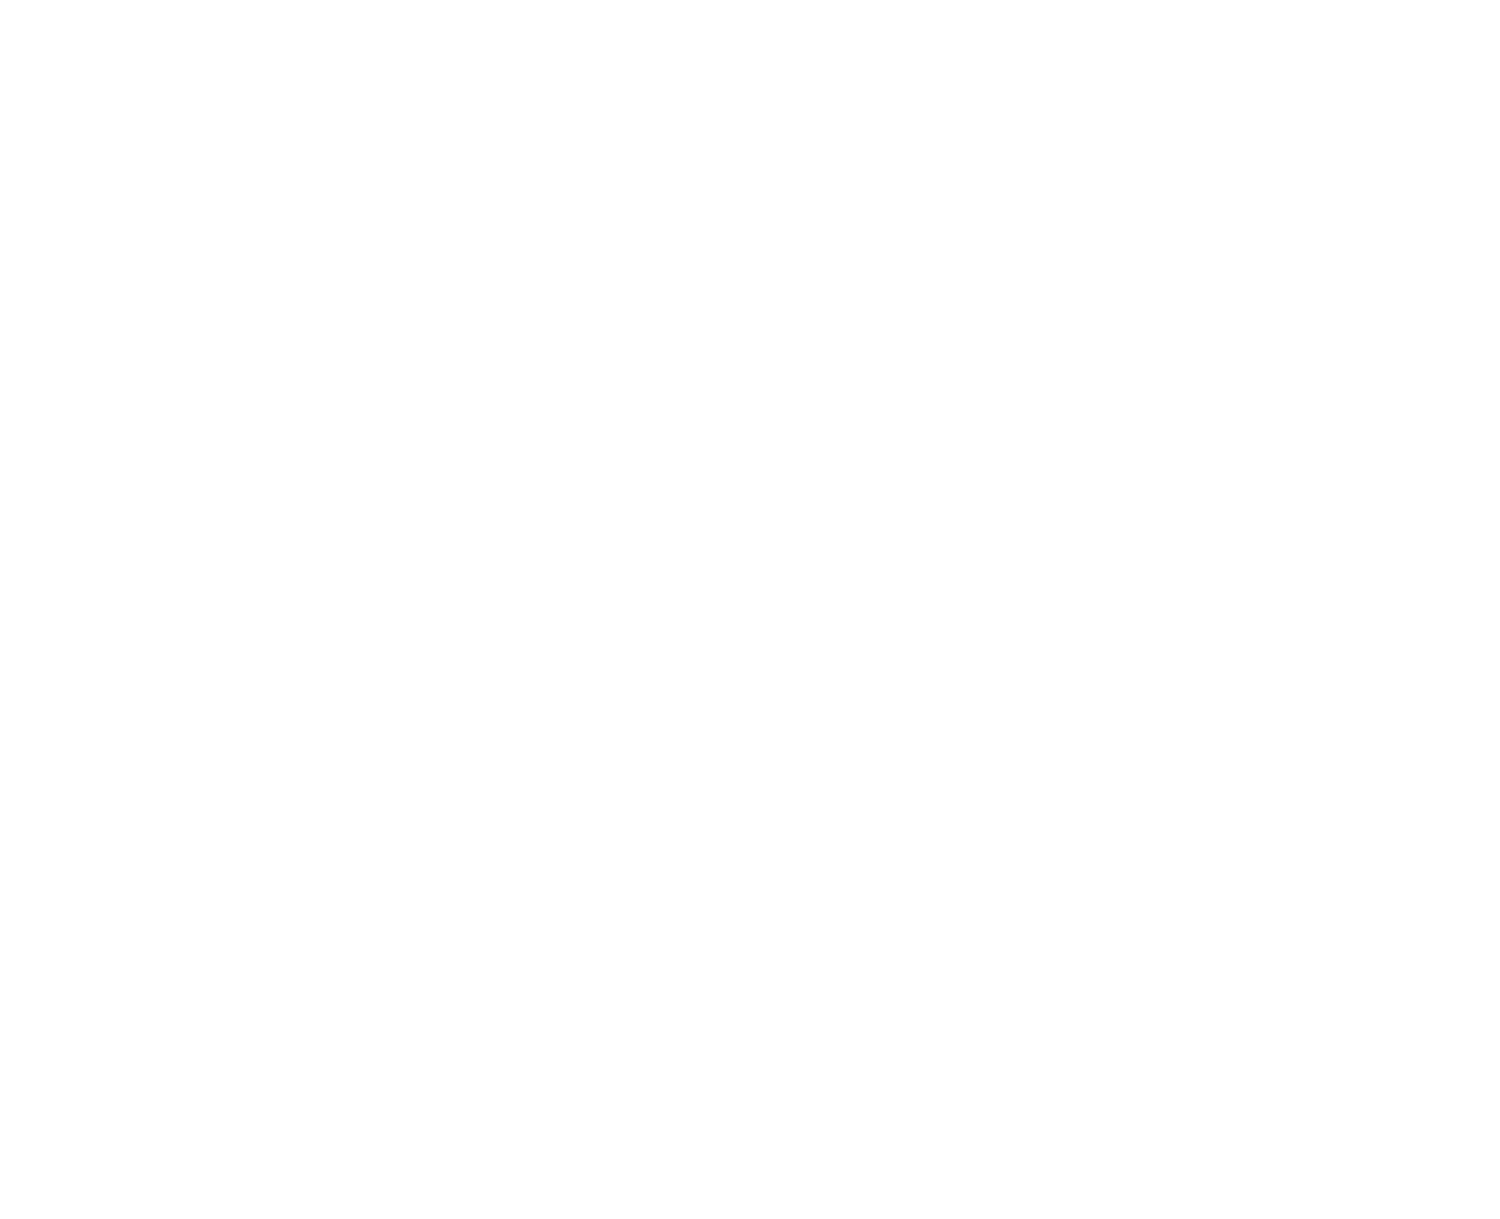 Cuckmere Haven SOS